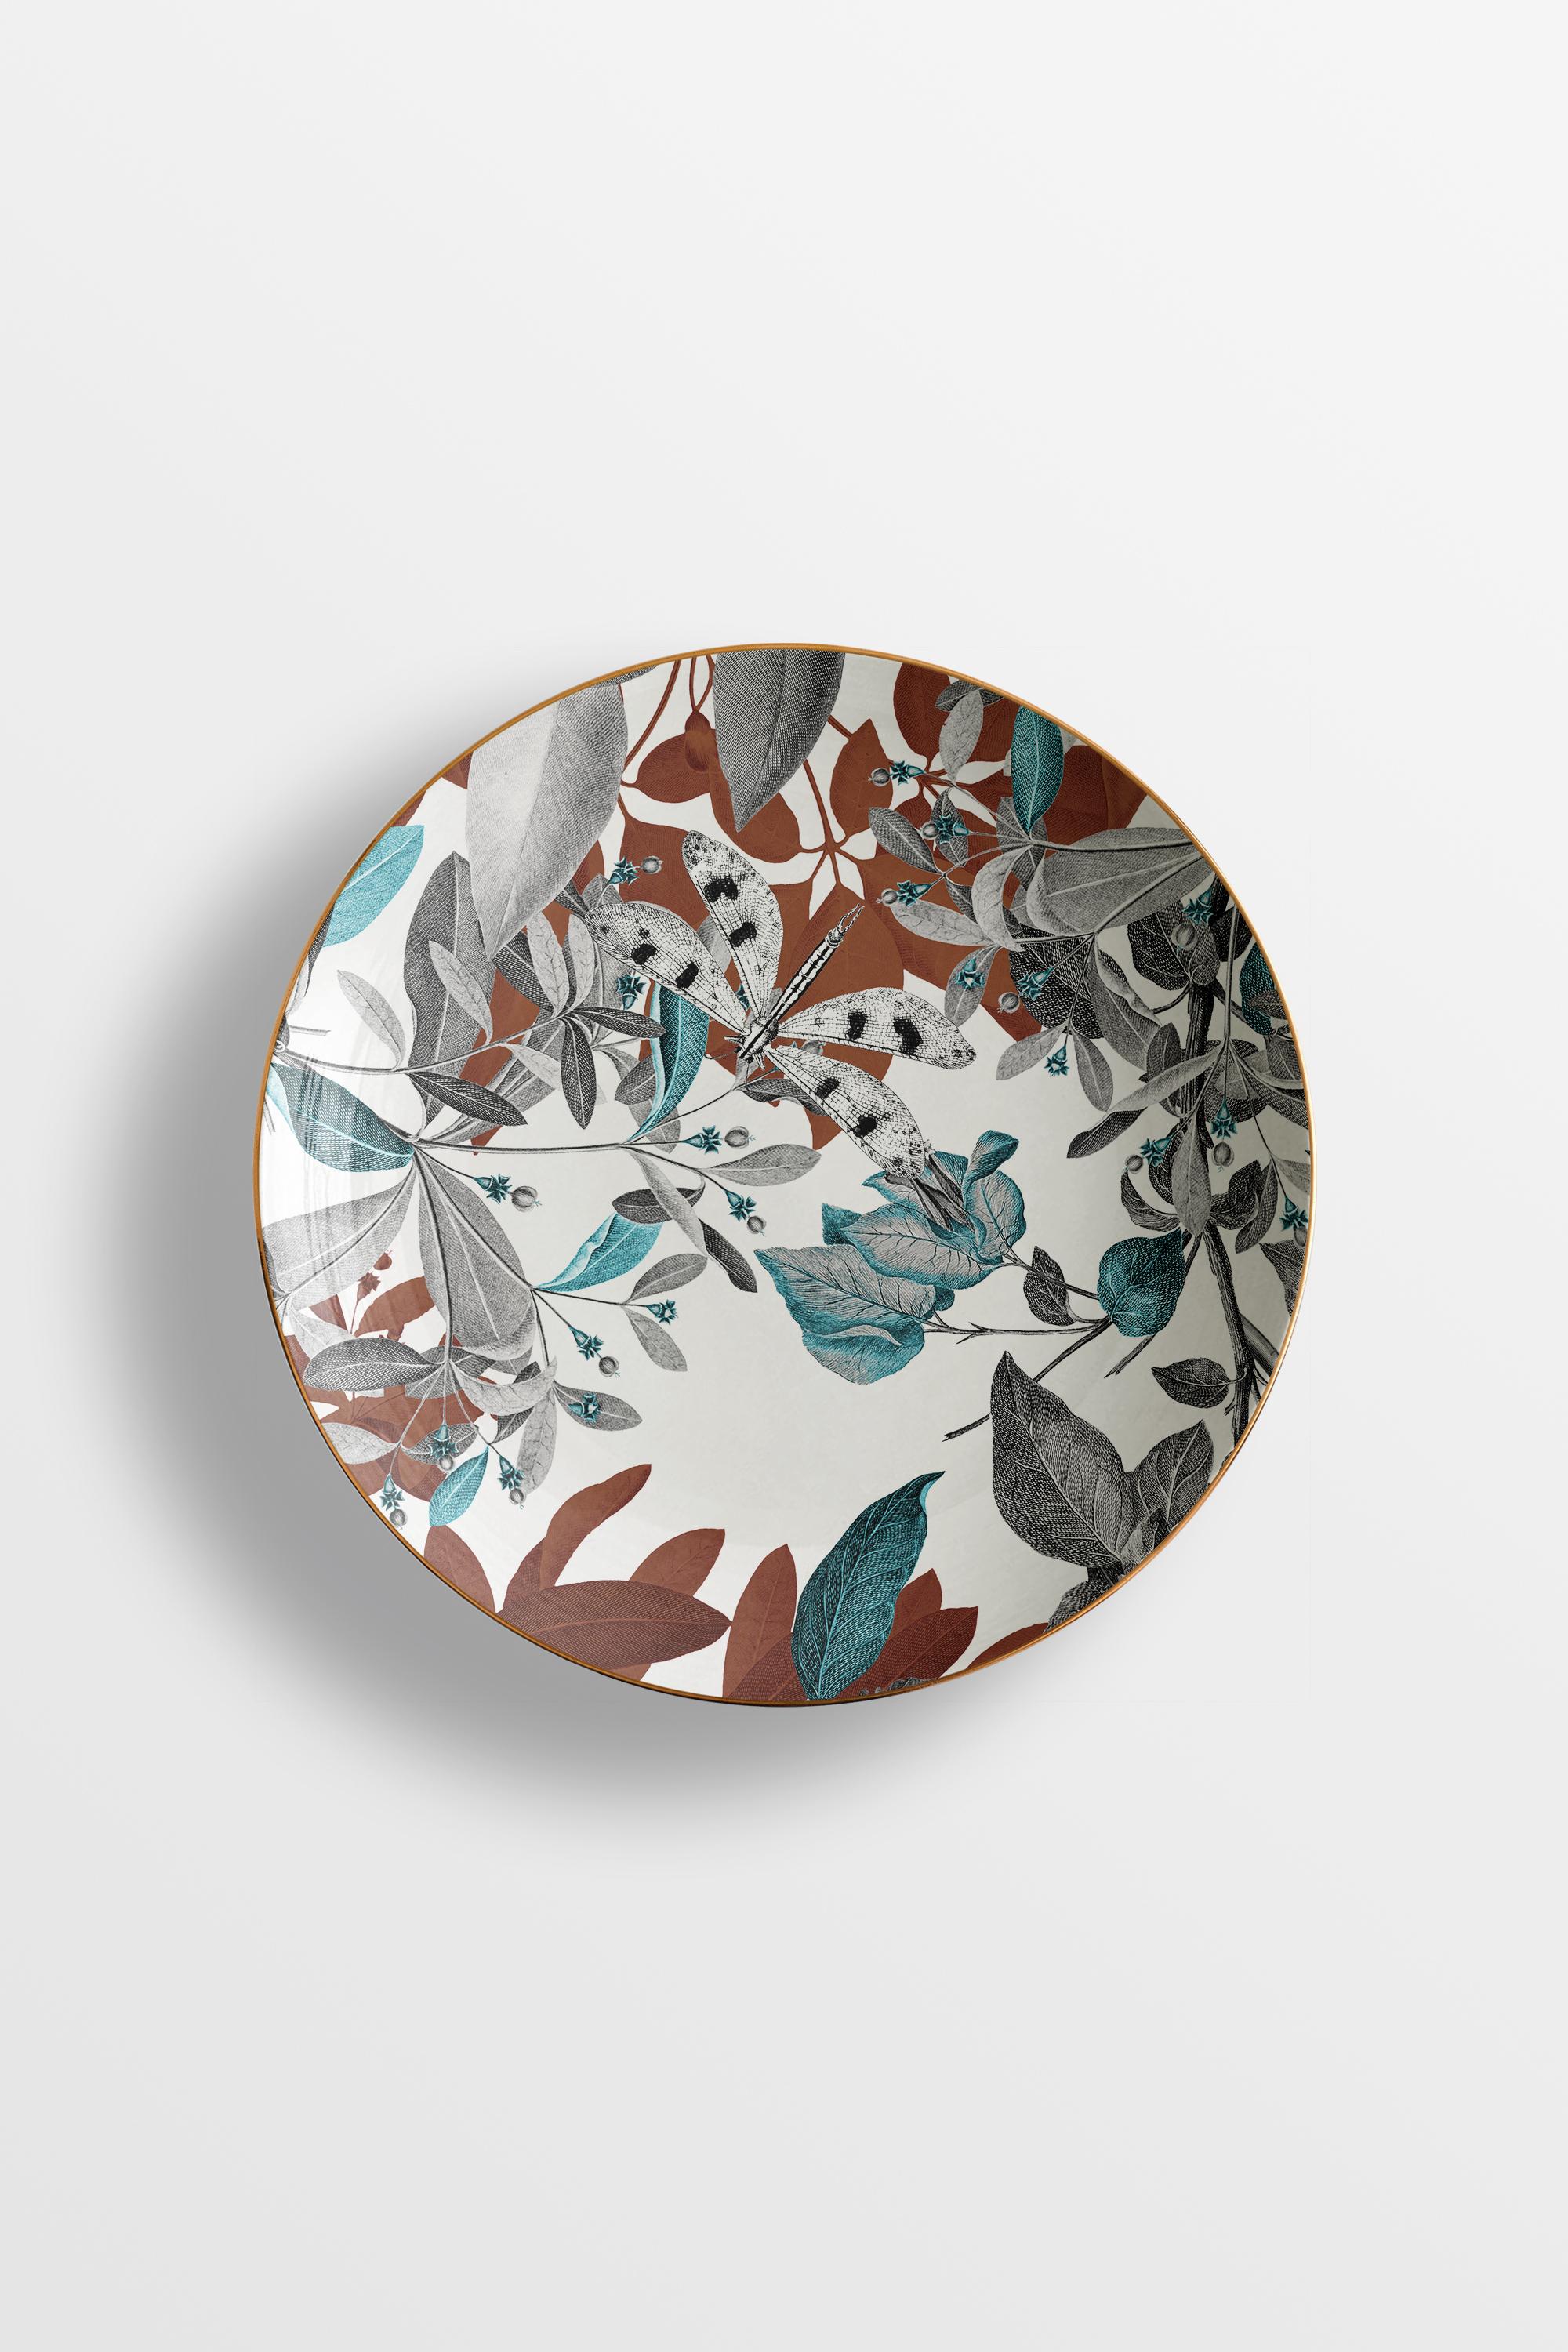 Black Dragon, Six Contemporary Porcelain soup plates with Decorative Design For Sale 2